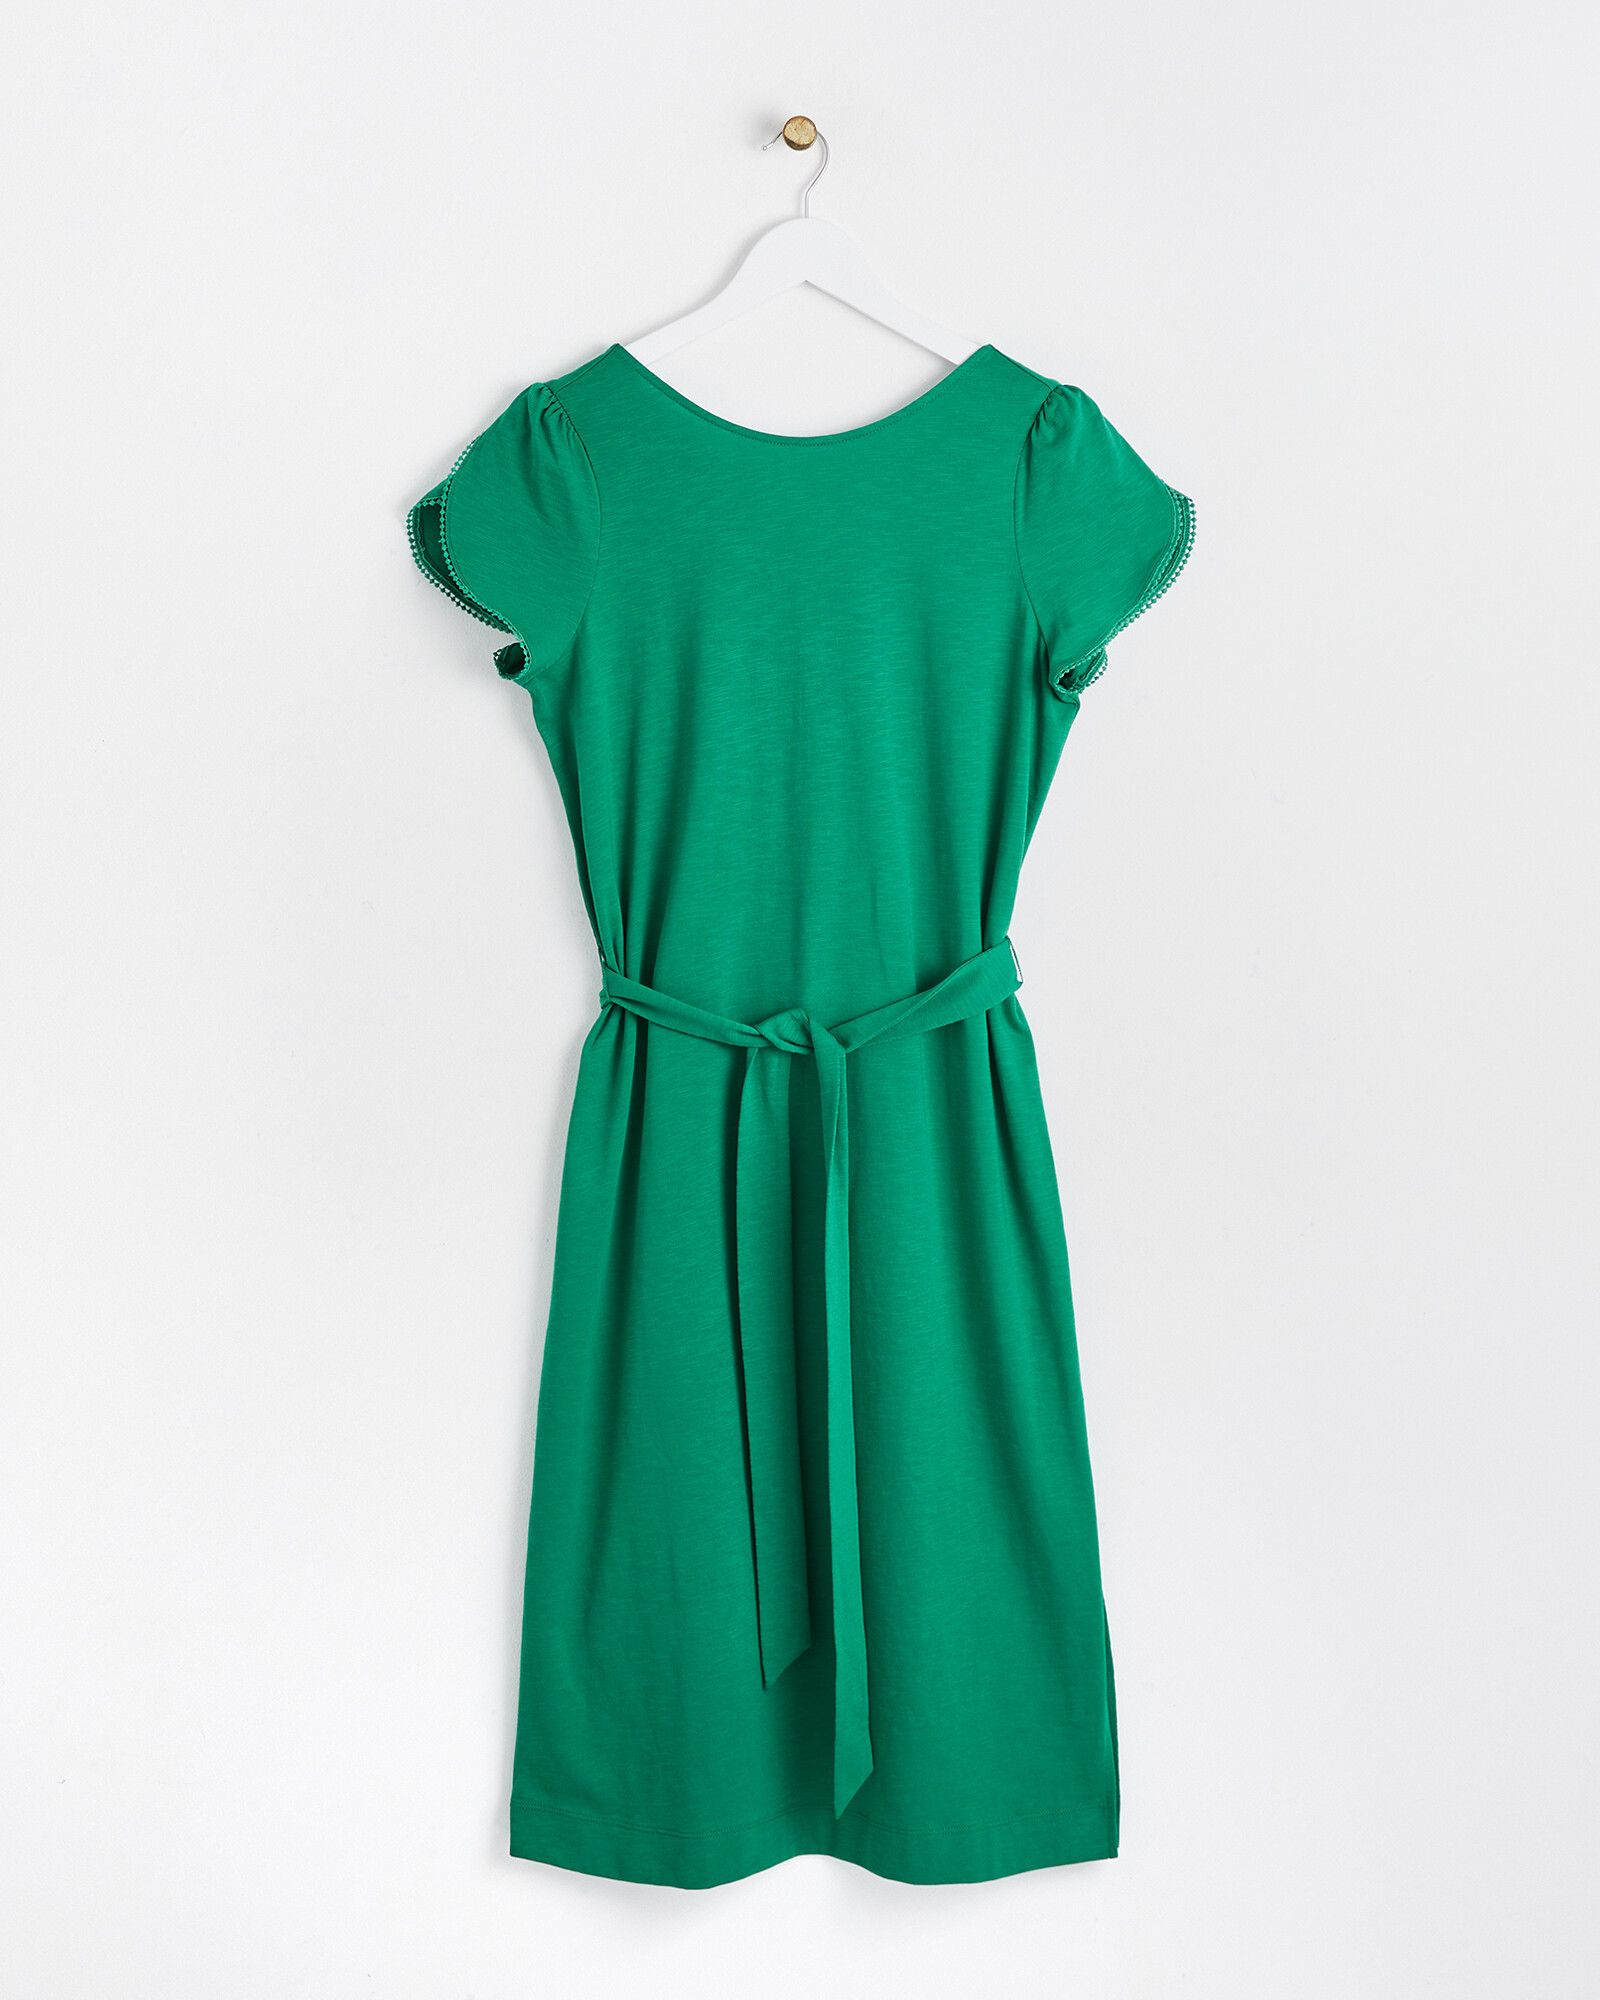 Lace Back Green Cotton Mini Dress | Oliver Bonas